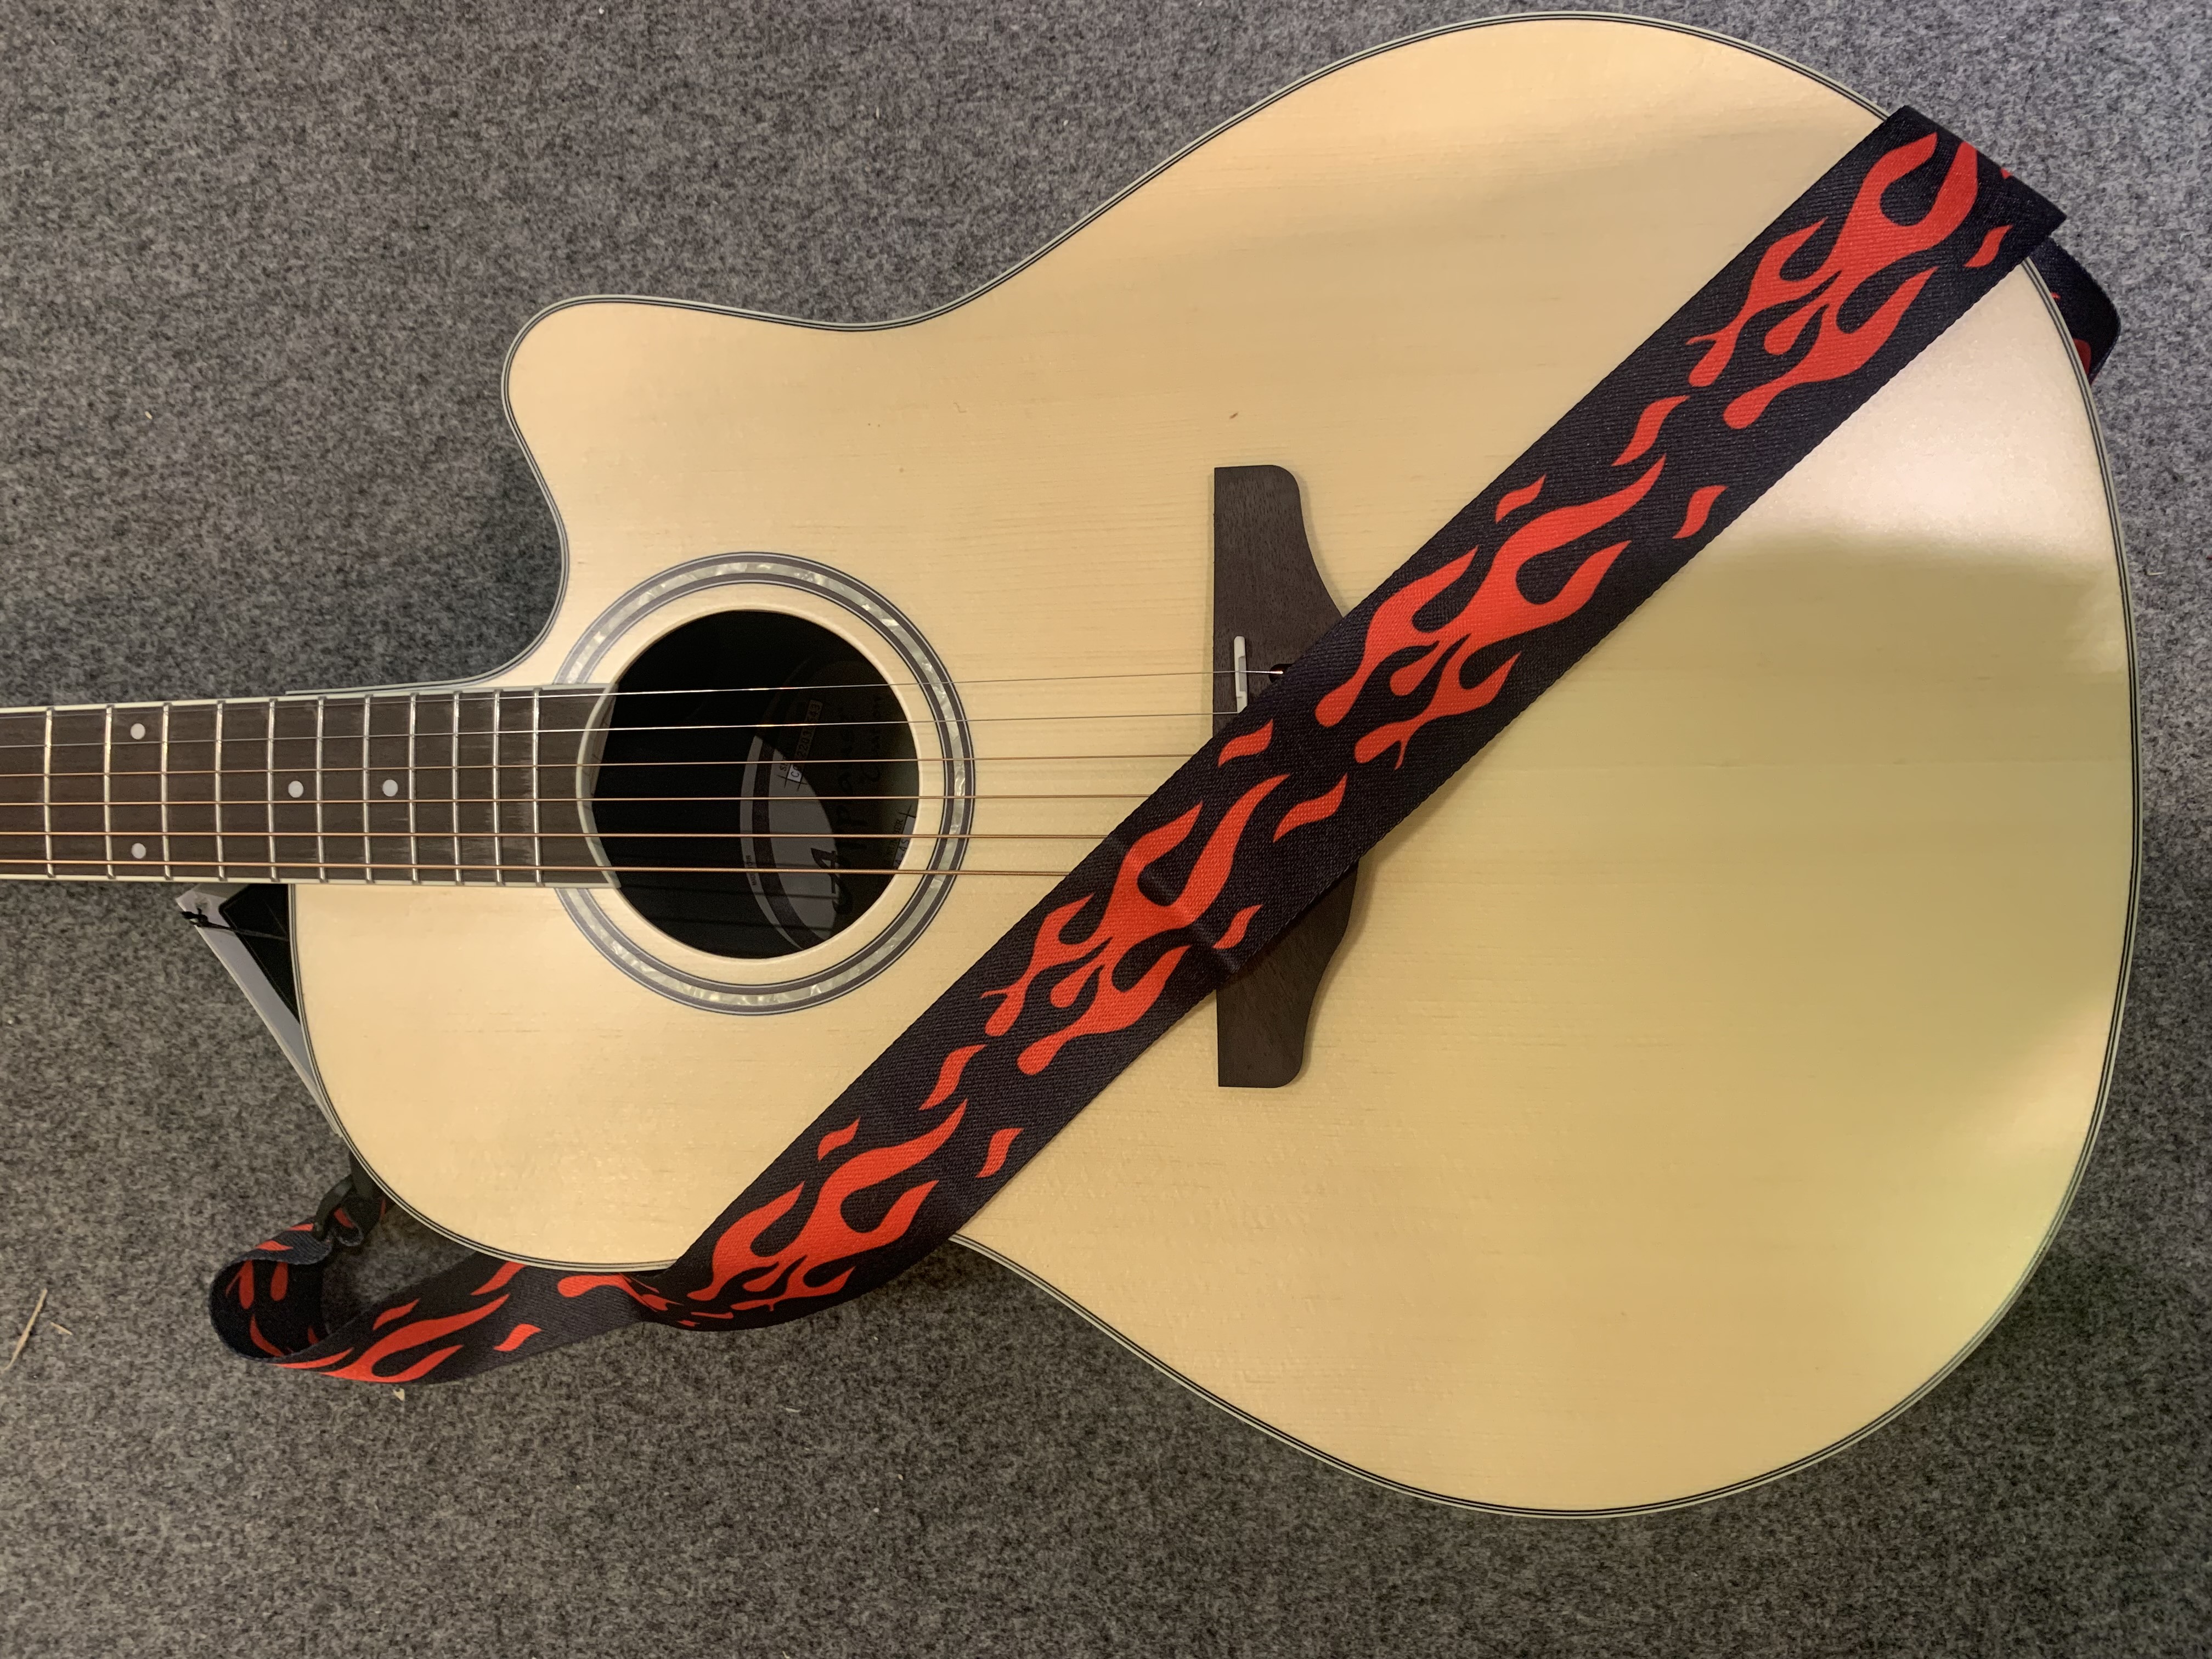 Umhängegurt  5 cm Breit -  für:  Gitarre-Ukulele-Banjo  